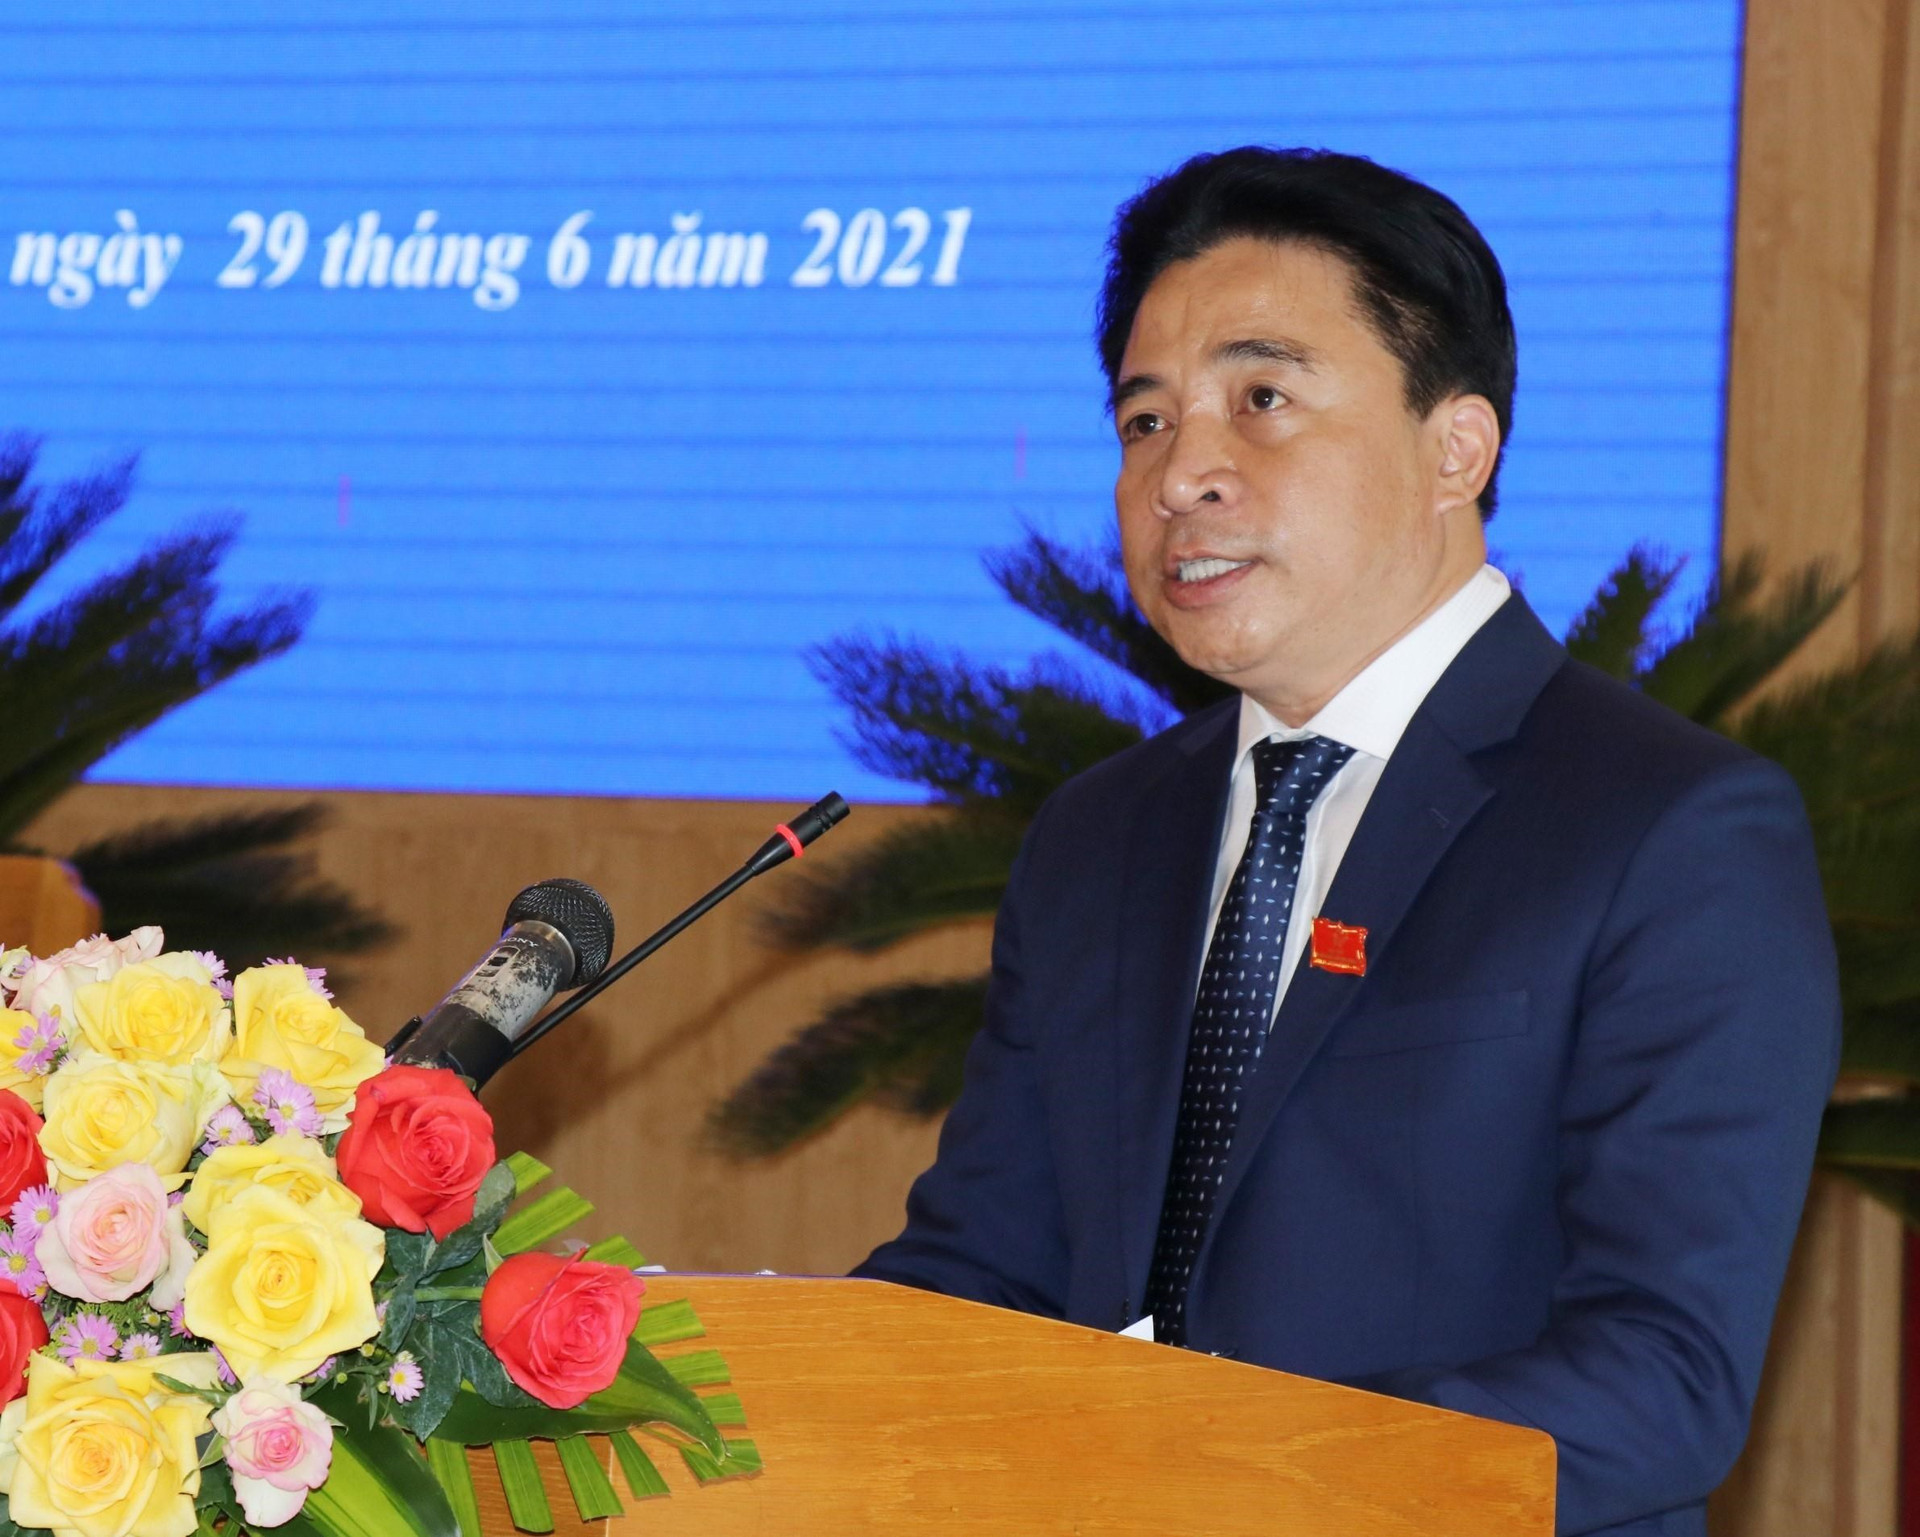 Ông Nguyễn Khắc Toàn phát biểu nhận nhiệm vụ Chủ tịch Hội đồng nhân dân tỉnh Khánh Hòa nhiệm kỳ 2021-2026. (Ảnh: Tiên Minh/TTXVN)